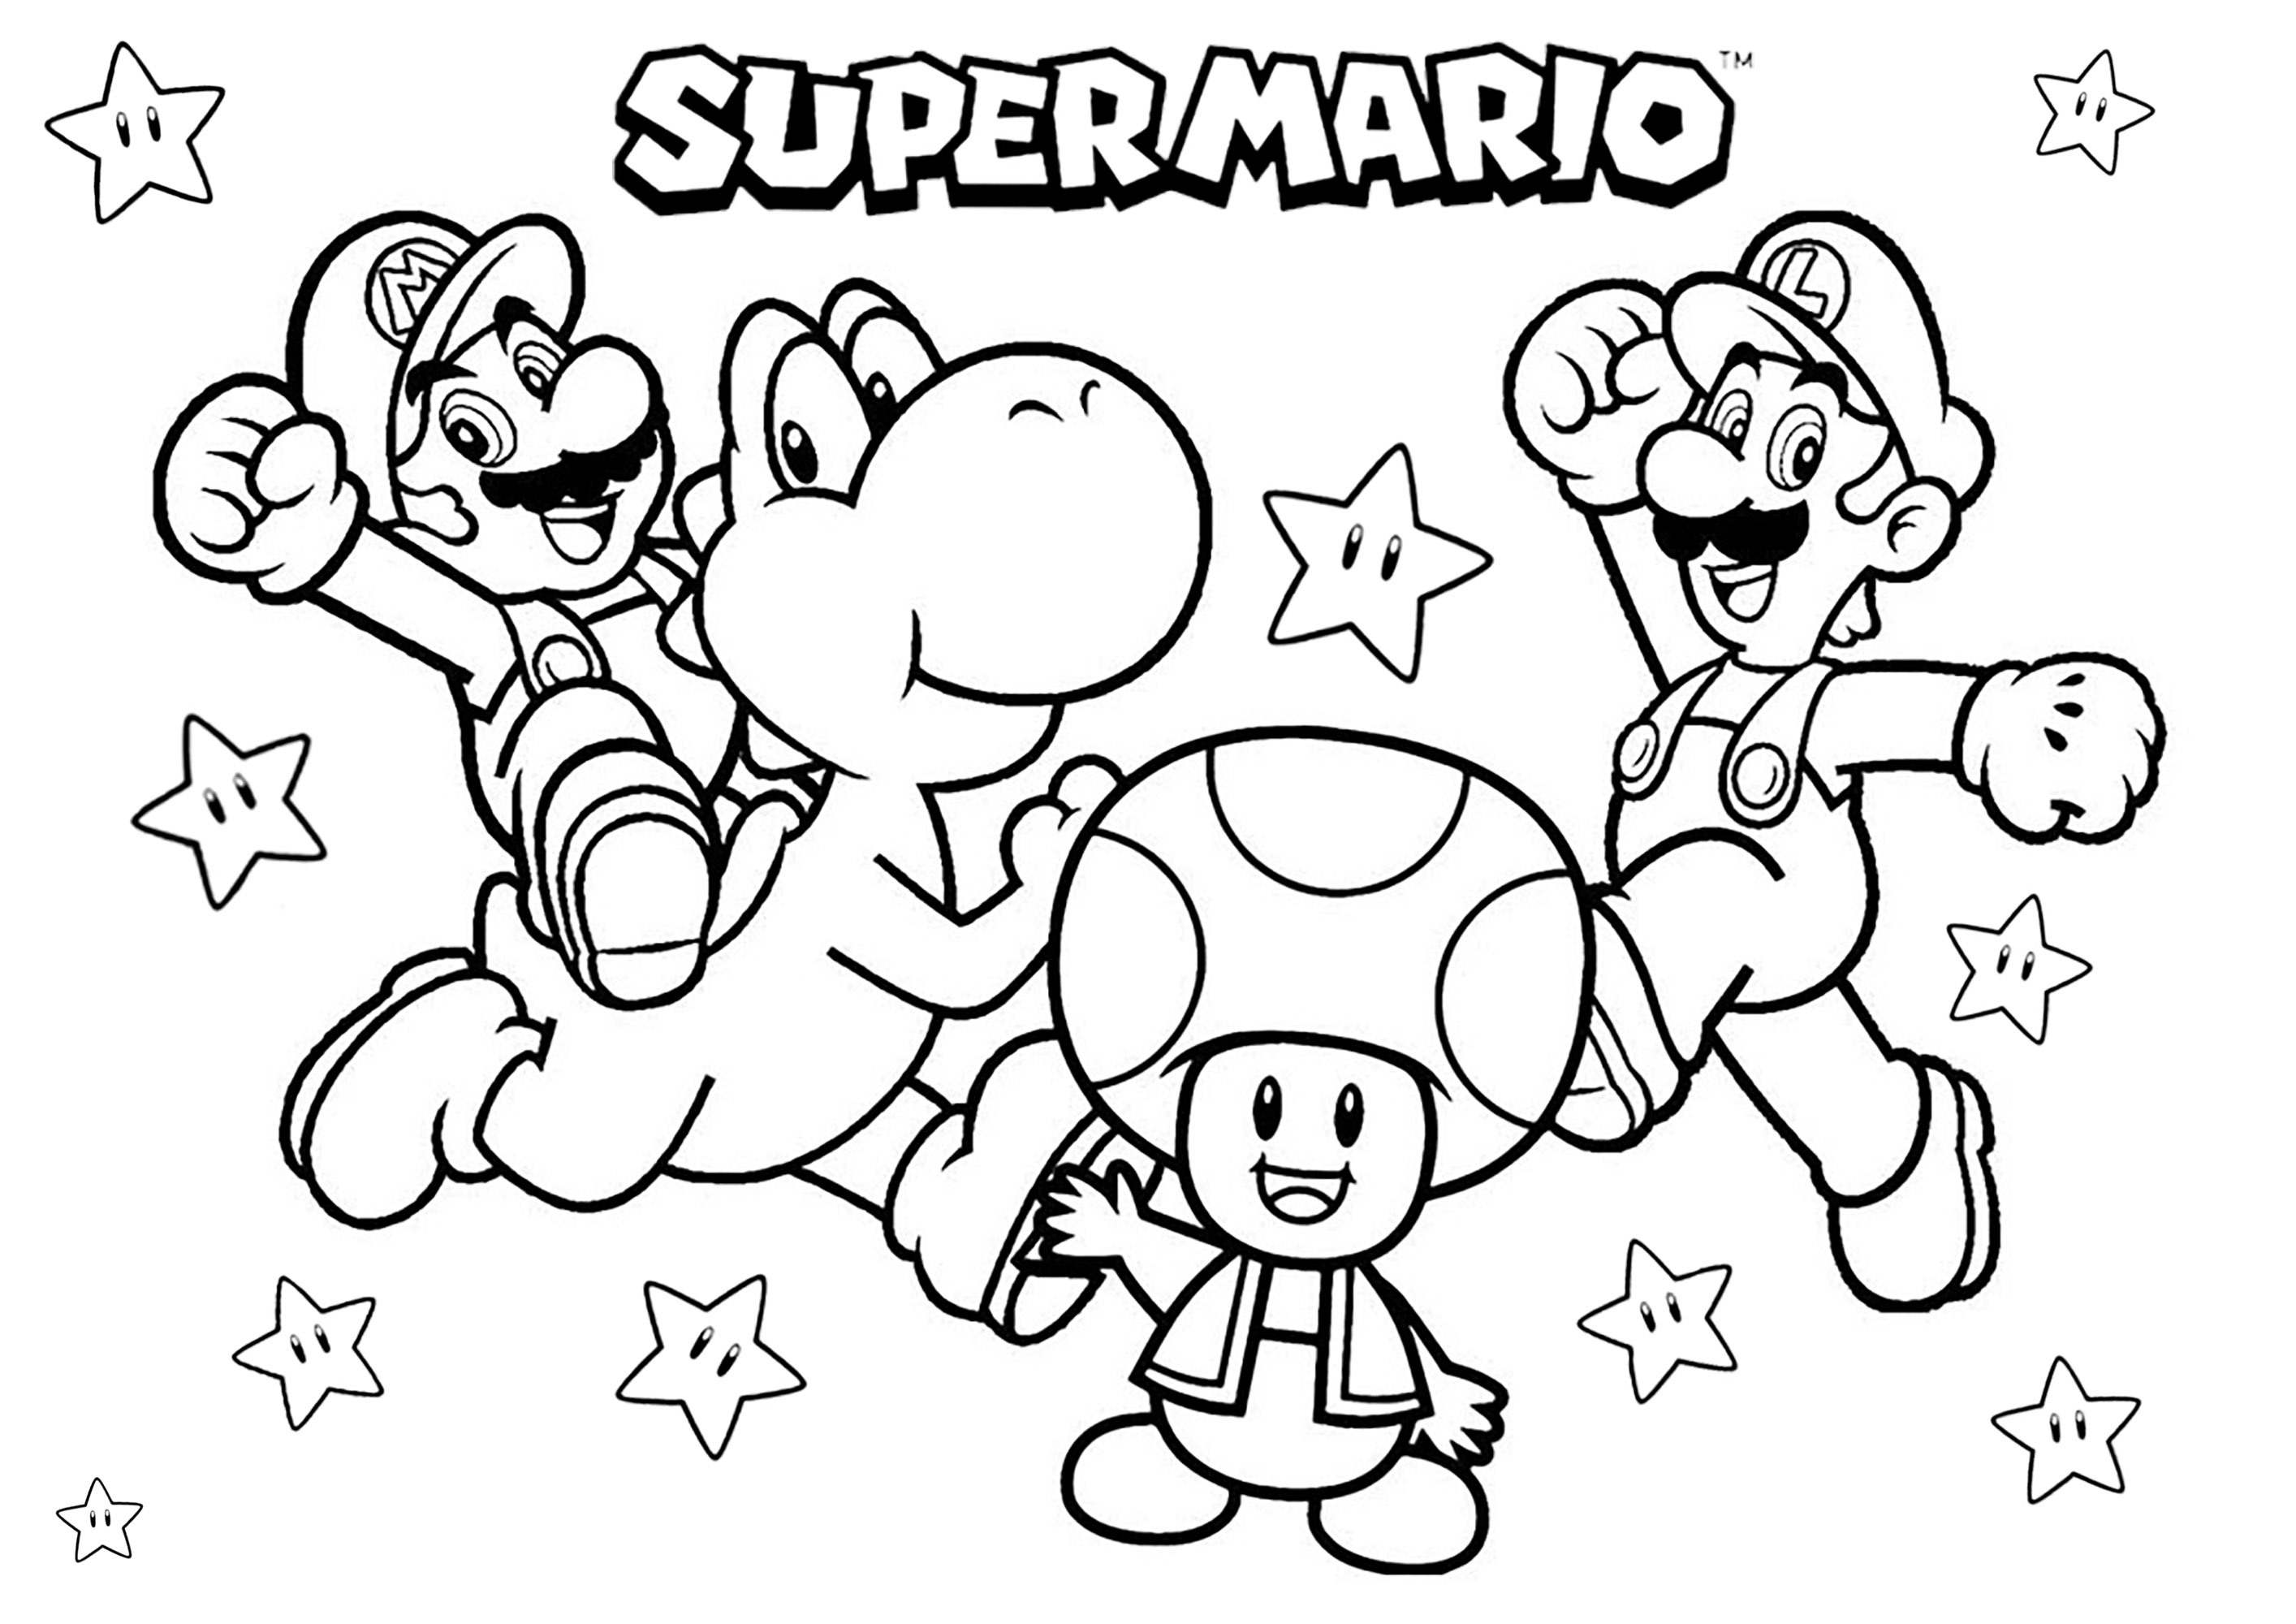 Mario, Luigi, Yoshi et Toad avec nombreuses étoiles. Un coloriage avec quelques uns des principaux personnages de Super Mario Bros : Les frères Mario et Luigi, le dinosaure Yoshi et le champignon Toad !